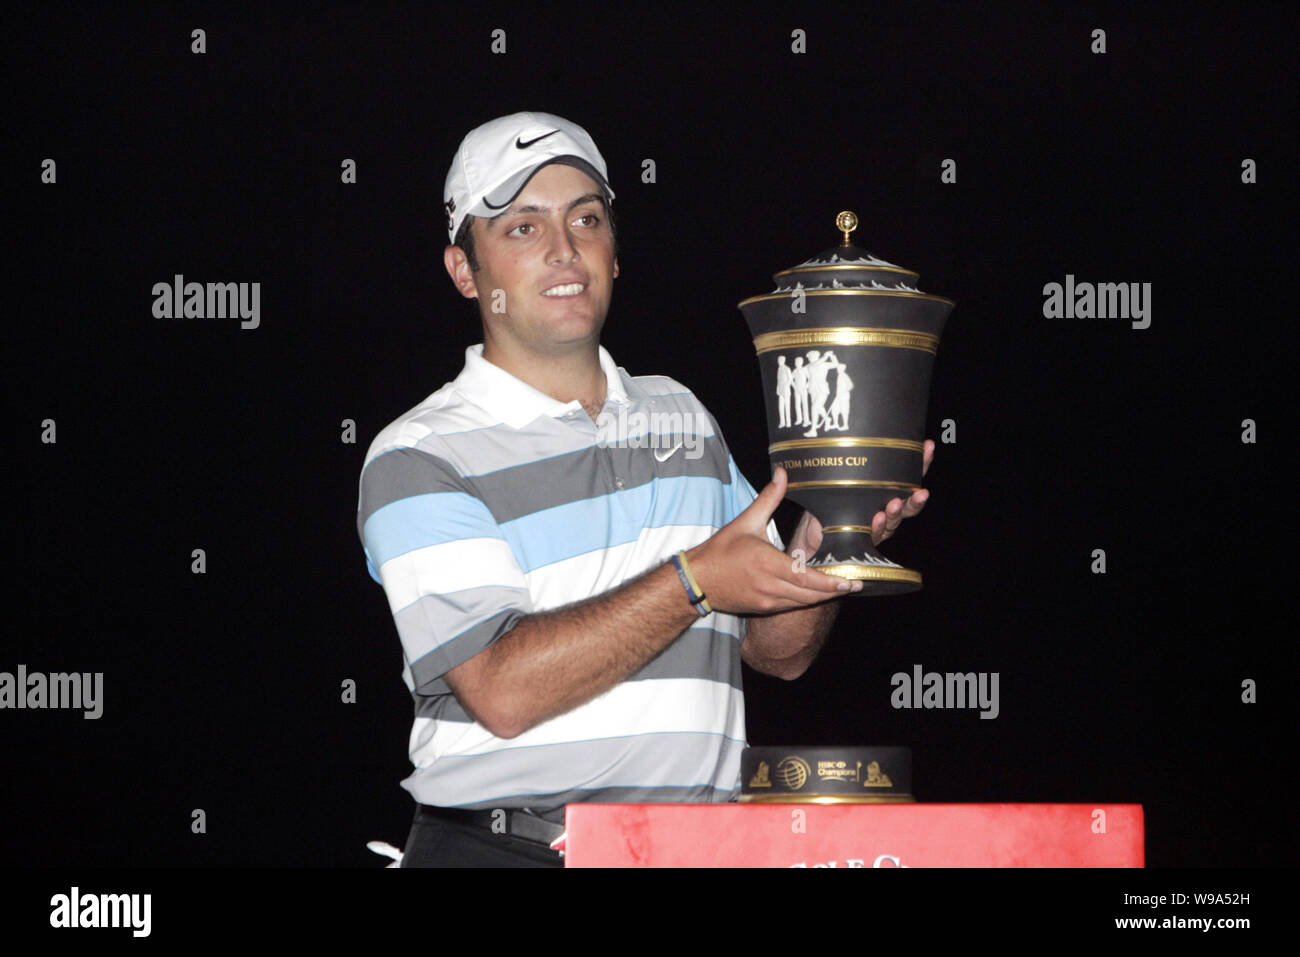 Golfista italiano Francesco Molinari celebra su trofeo durante la ceremonia de entrega de premios de los campeones del torneo de golf HSBC en el Sheshan International Golf C Foto de stock